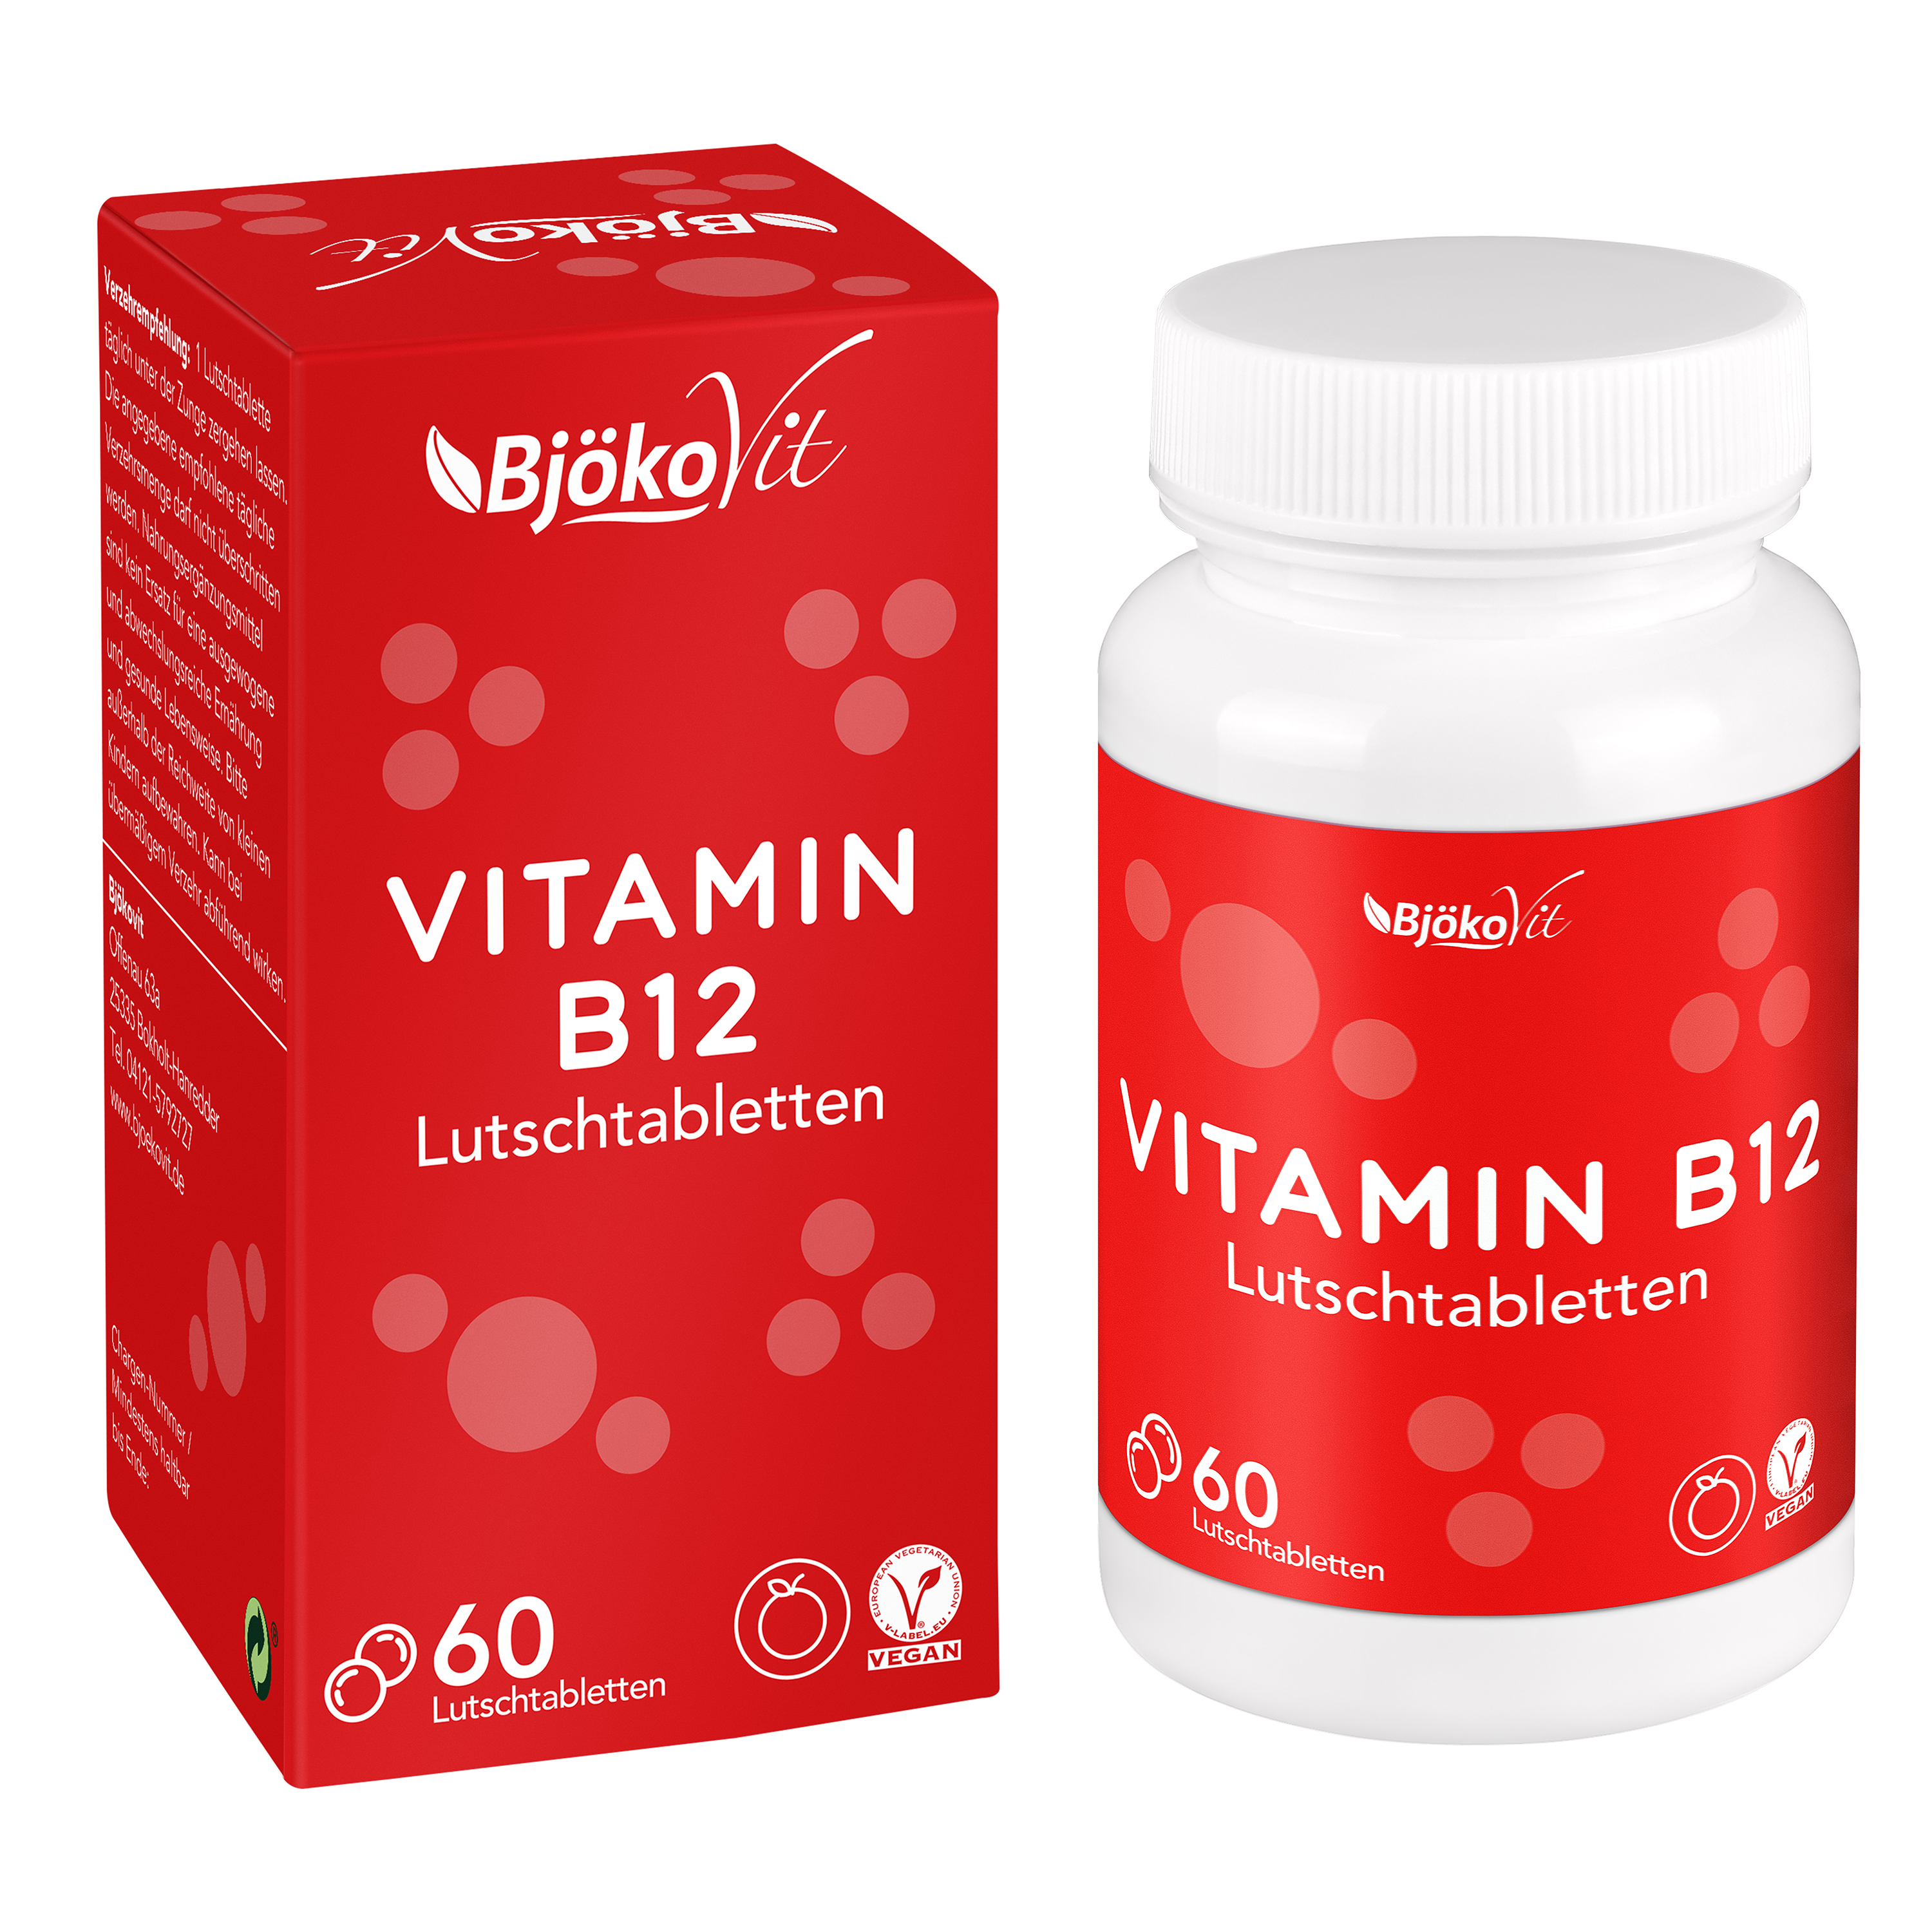 BjökoVit Vitamin B12 Lutschtabletten 500mcg vegan